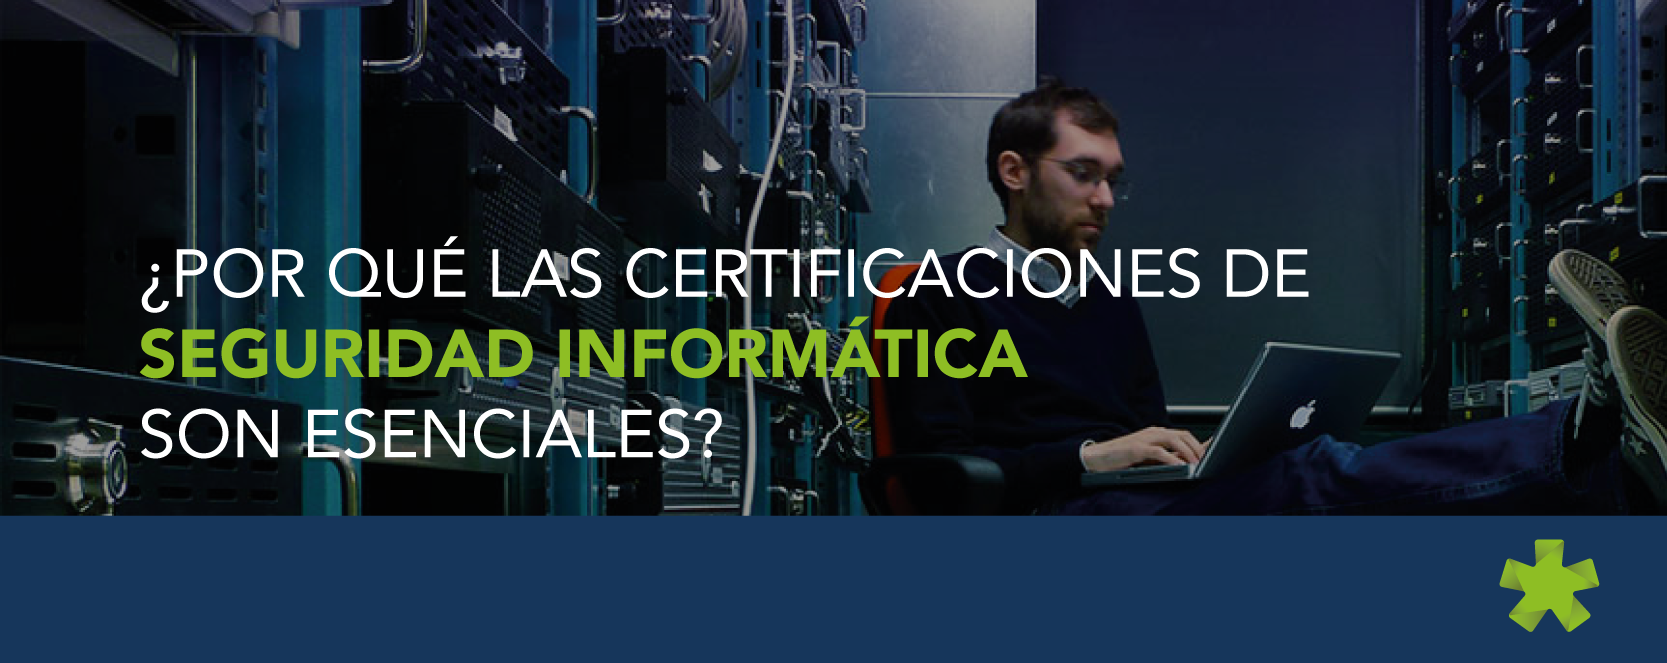 Certificaciones de Seguridad Informática